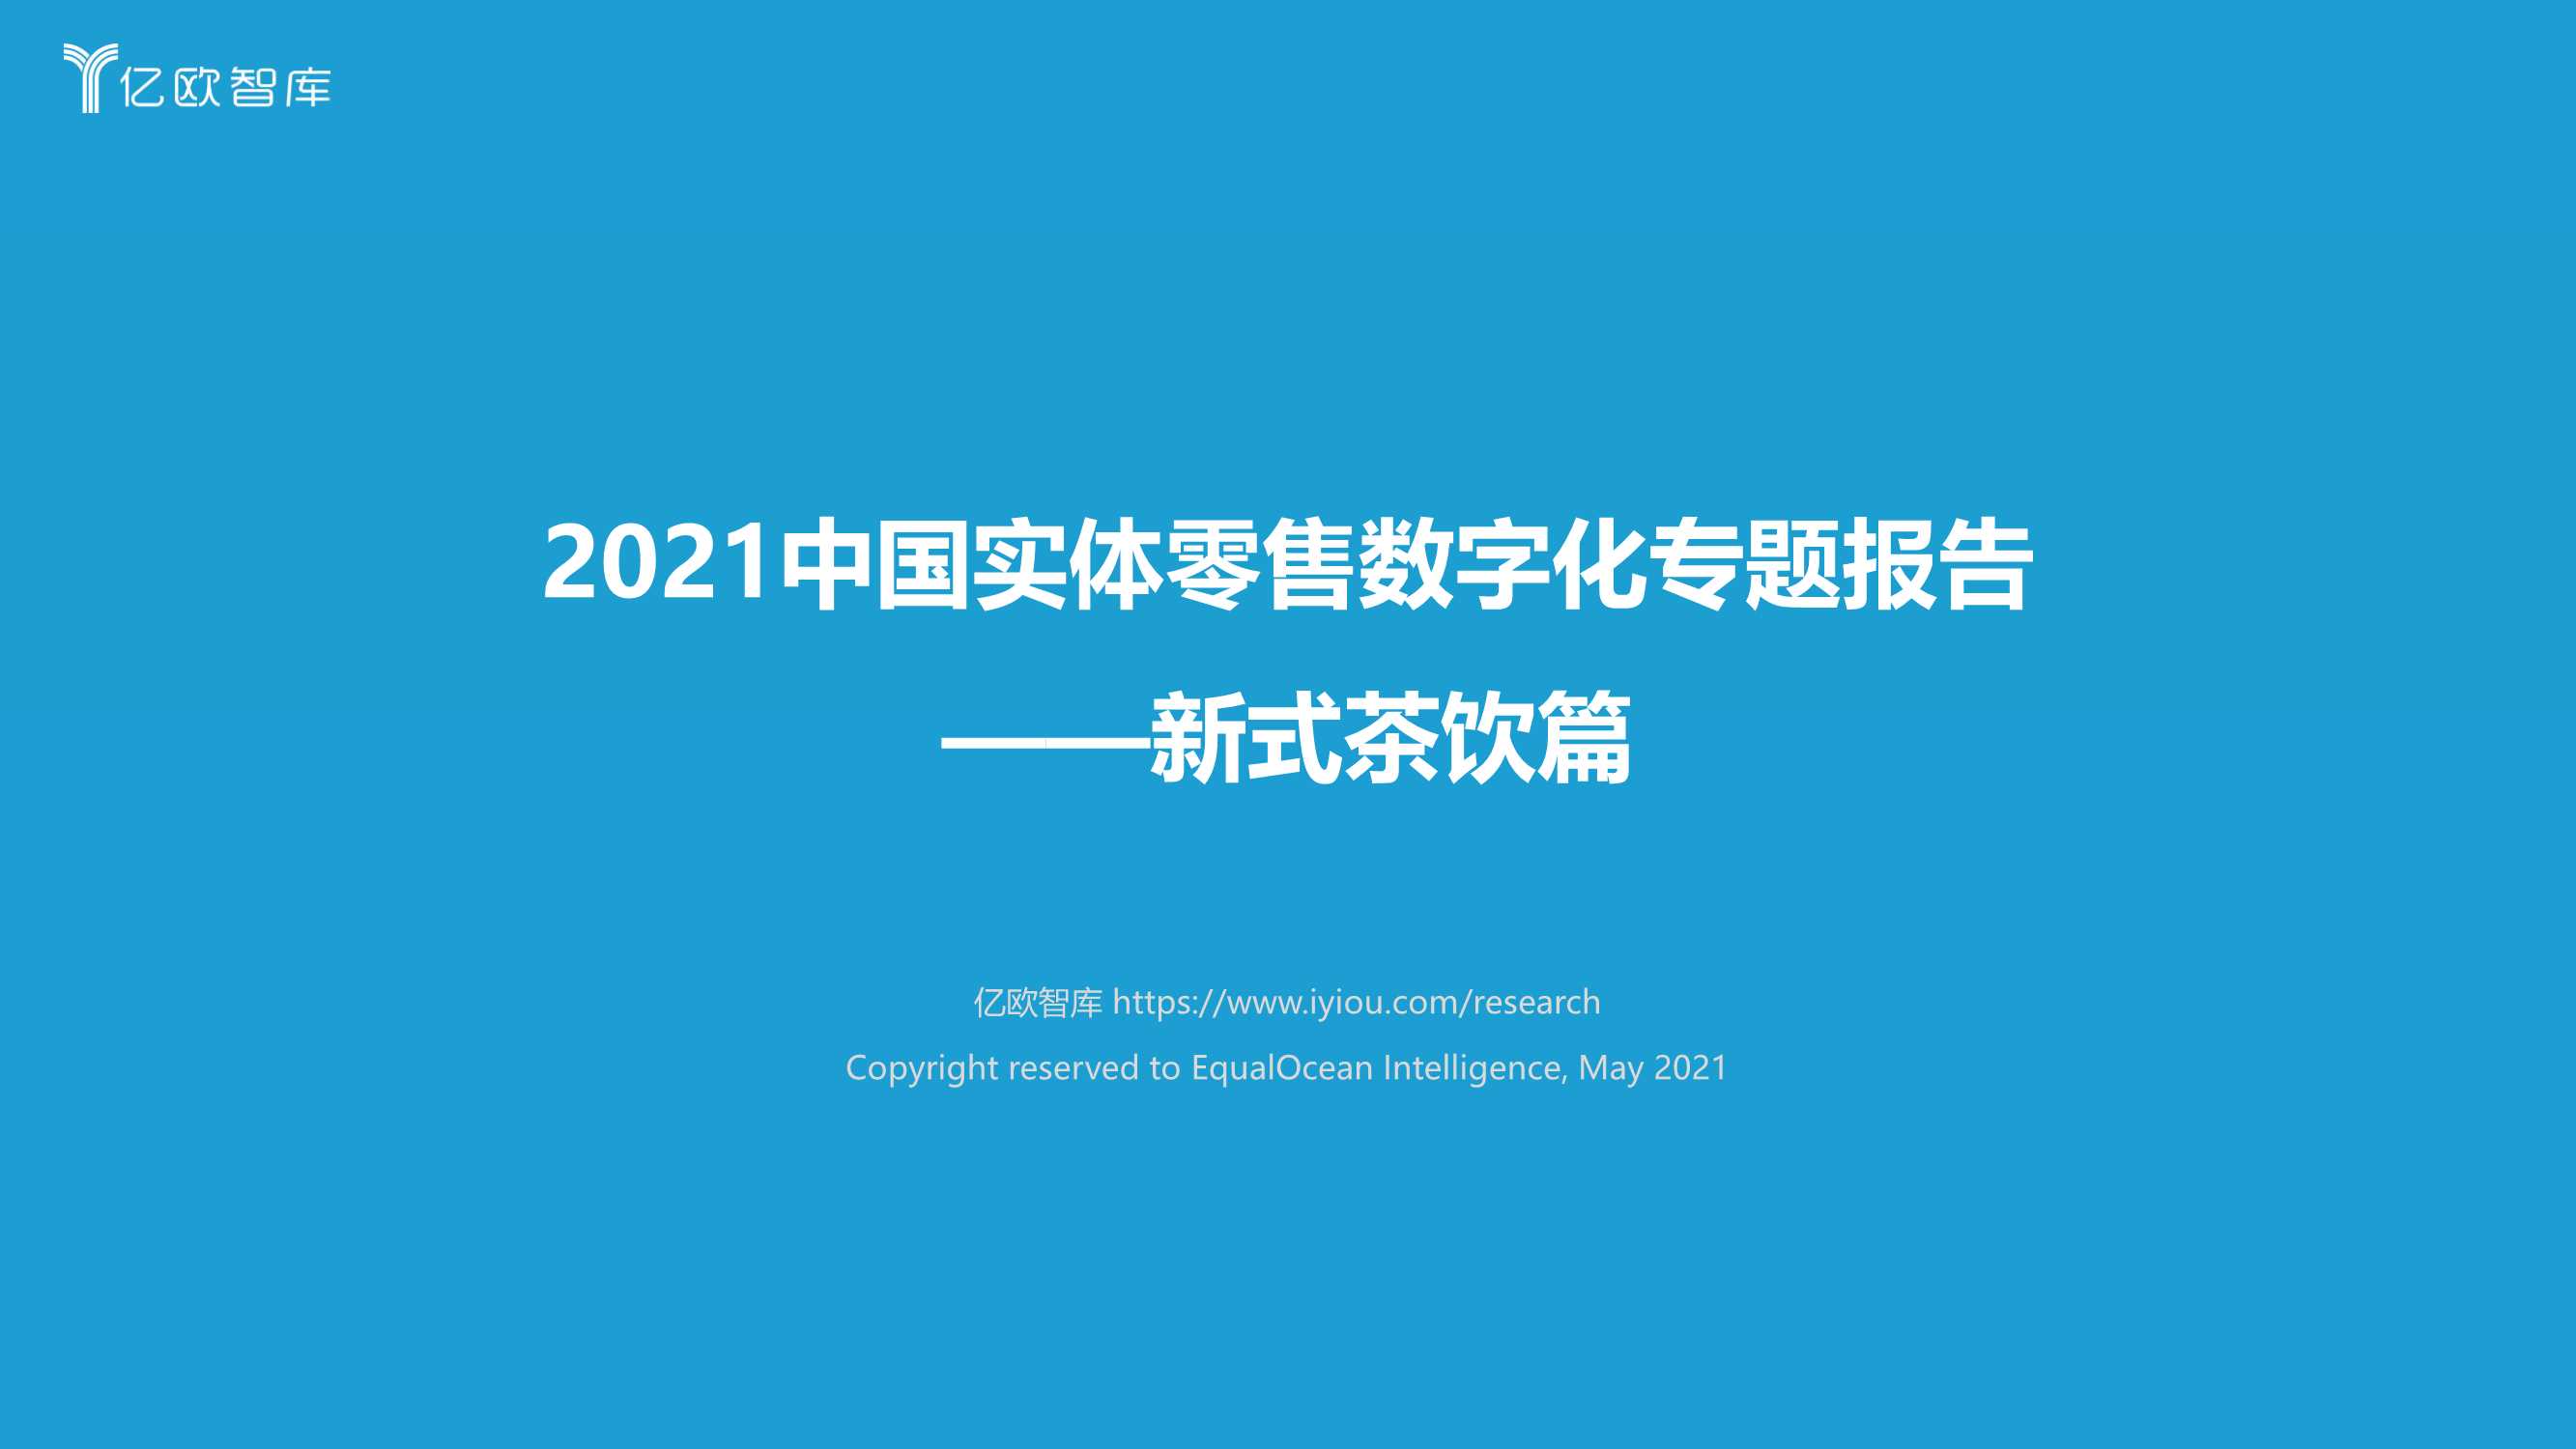 亿欧-2021中国实体零售数字化专题报告-新式茶饮篇-2021.05-53页